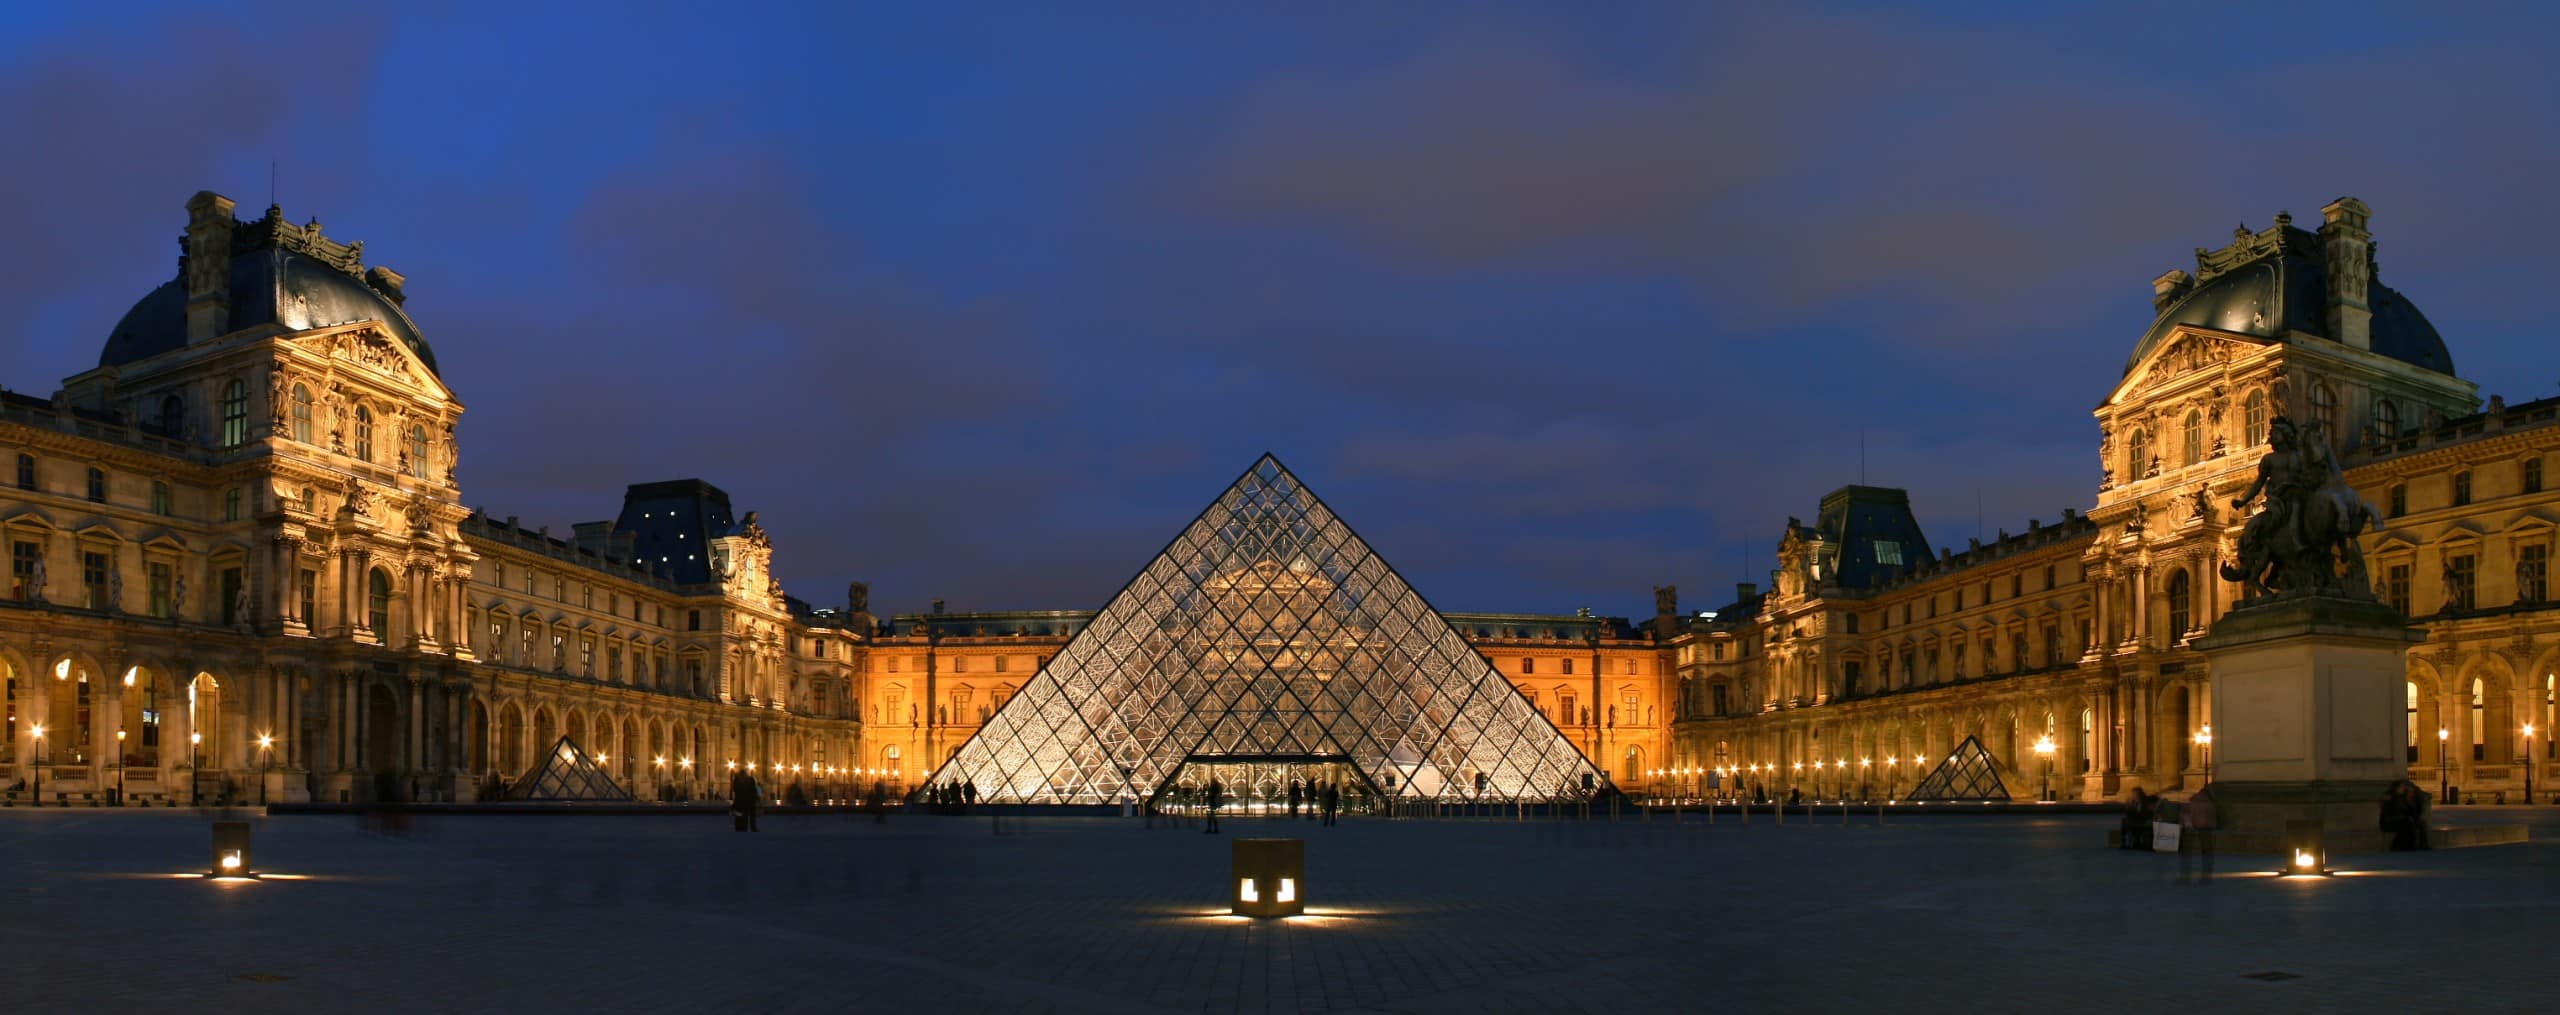 Der Louvre in Paris – eine Architektur-Ikone der Nachkriegsmoderne – hat einen hohen Energieverbrauch mit seinen mit seinen gigantischen Glaswänden. Foto: Wikimedia Commons / Benh LIEU SONG